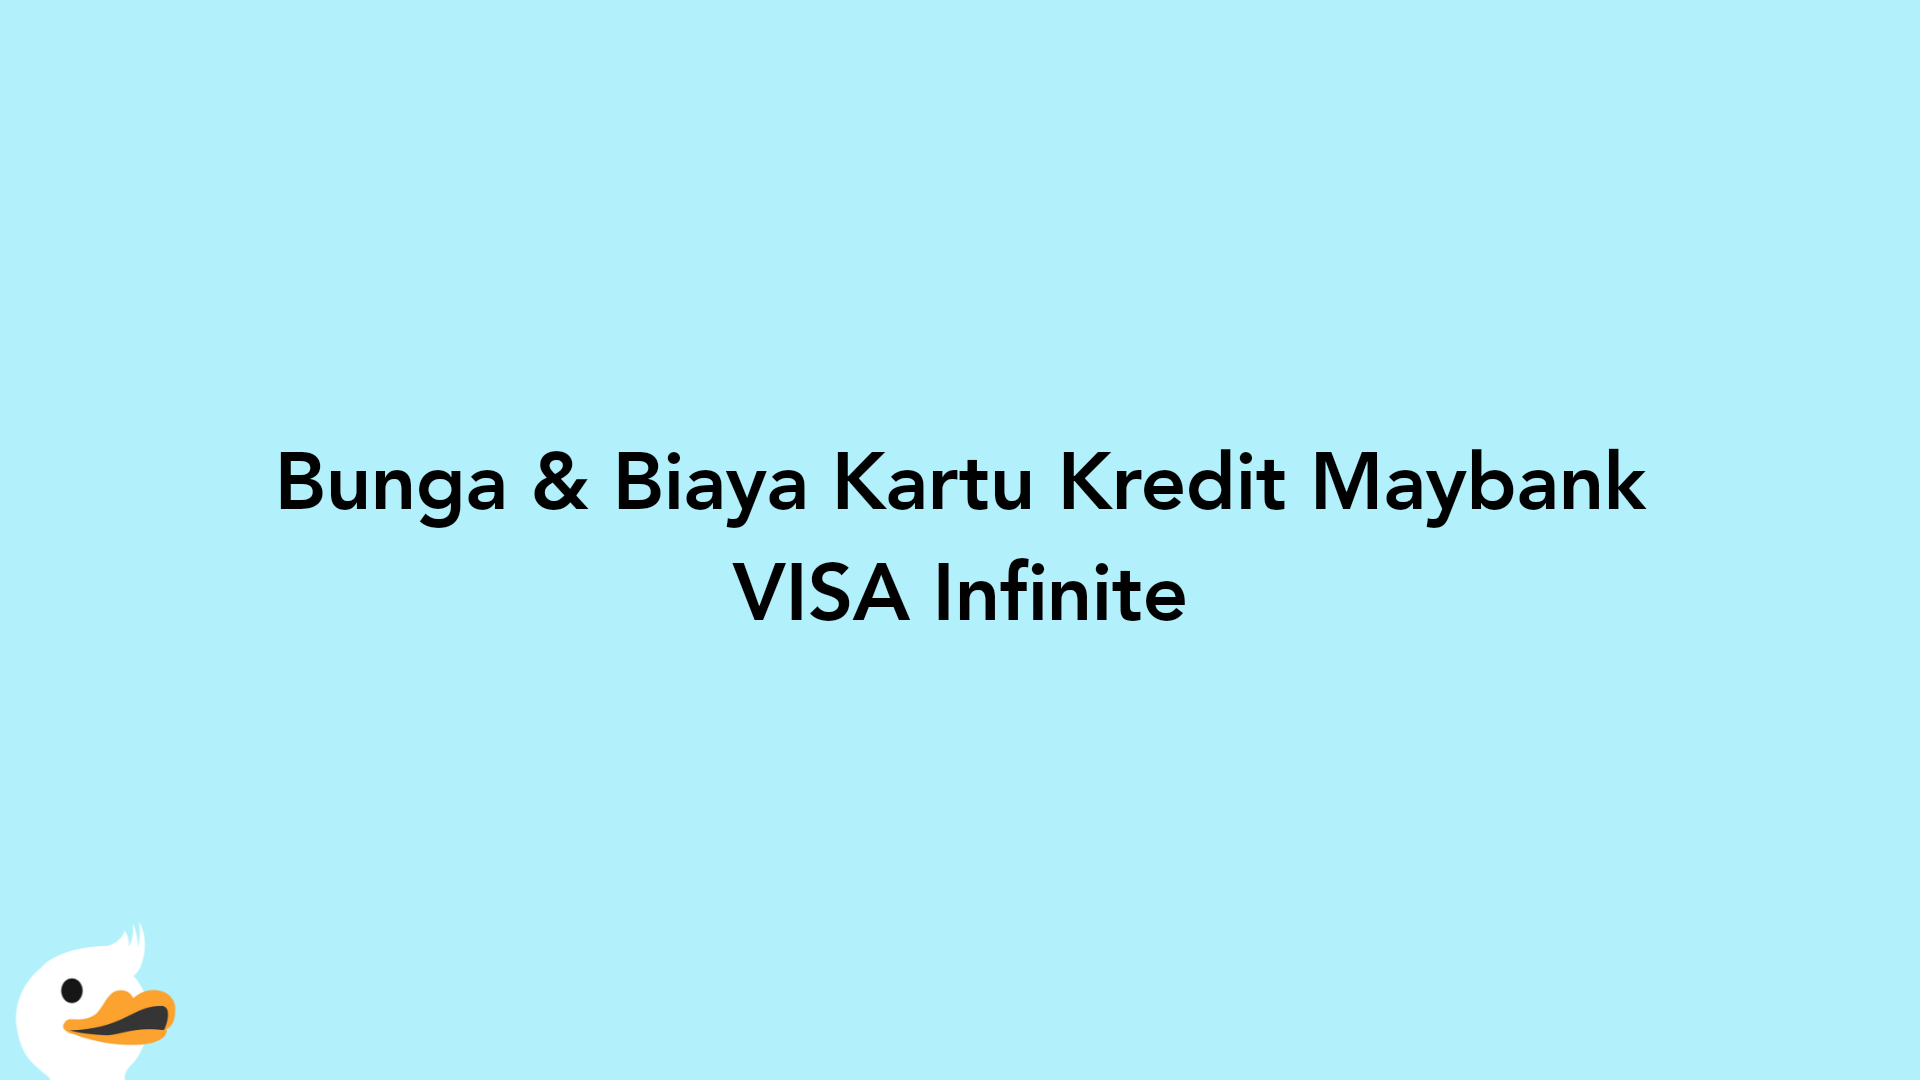 Bunga & Biaya Kartu Kredit Maybank VISA Infinite